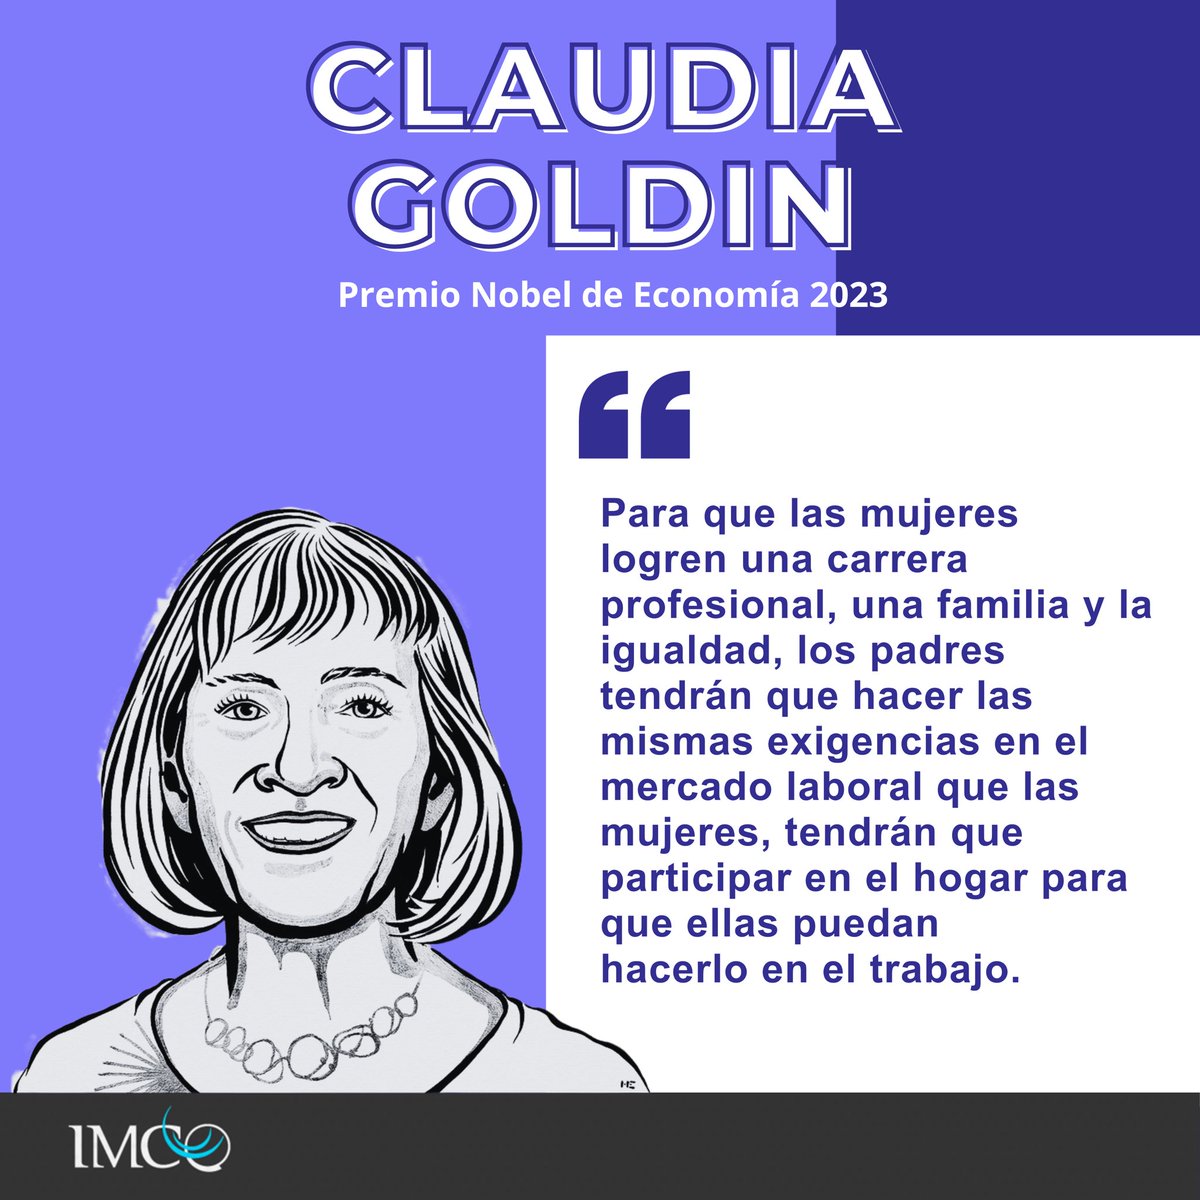 Claudia Goldin, economista estadounidense y profesora en economía de la Universidad de Harvard, fue galardonada con el Premio Nobel de Economía🏆 por estudiar a la participación de las mujeres en el mercado laboral🟣. Sus estudios se dedican a entender las brechas de género en…